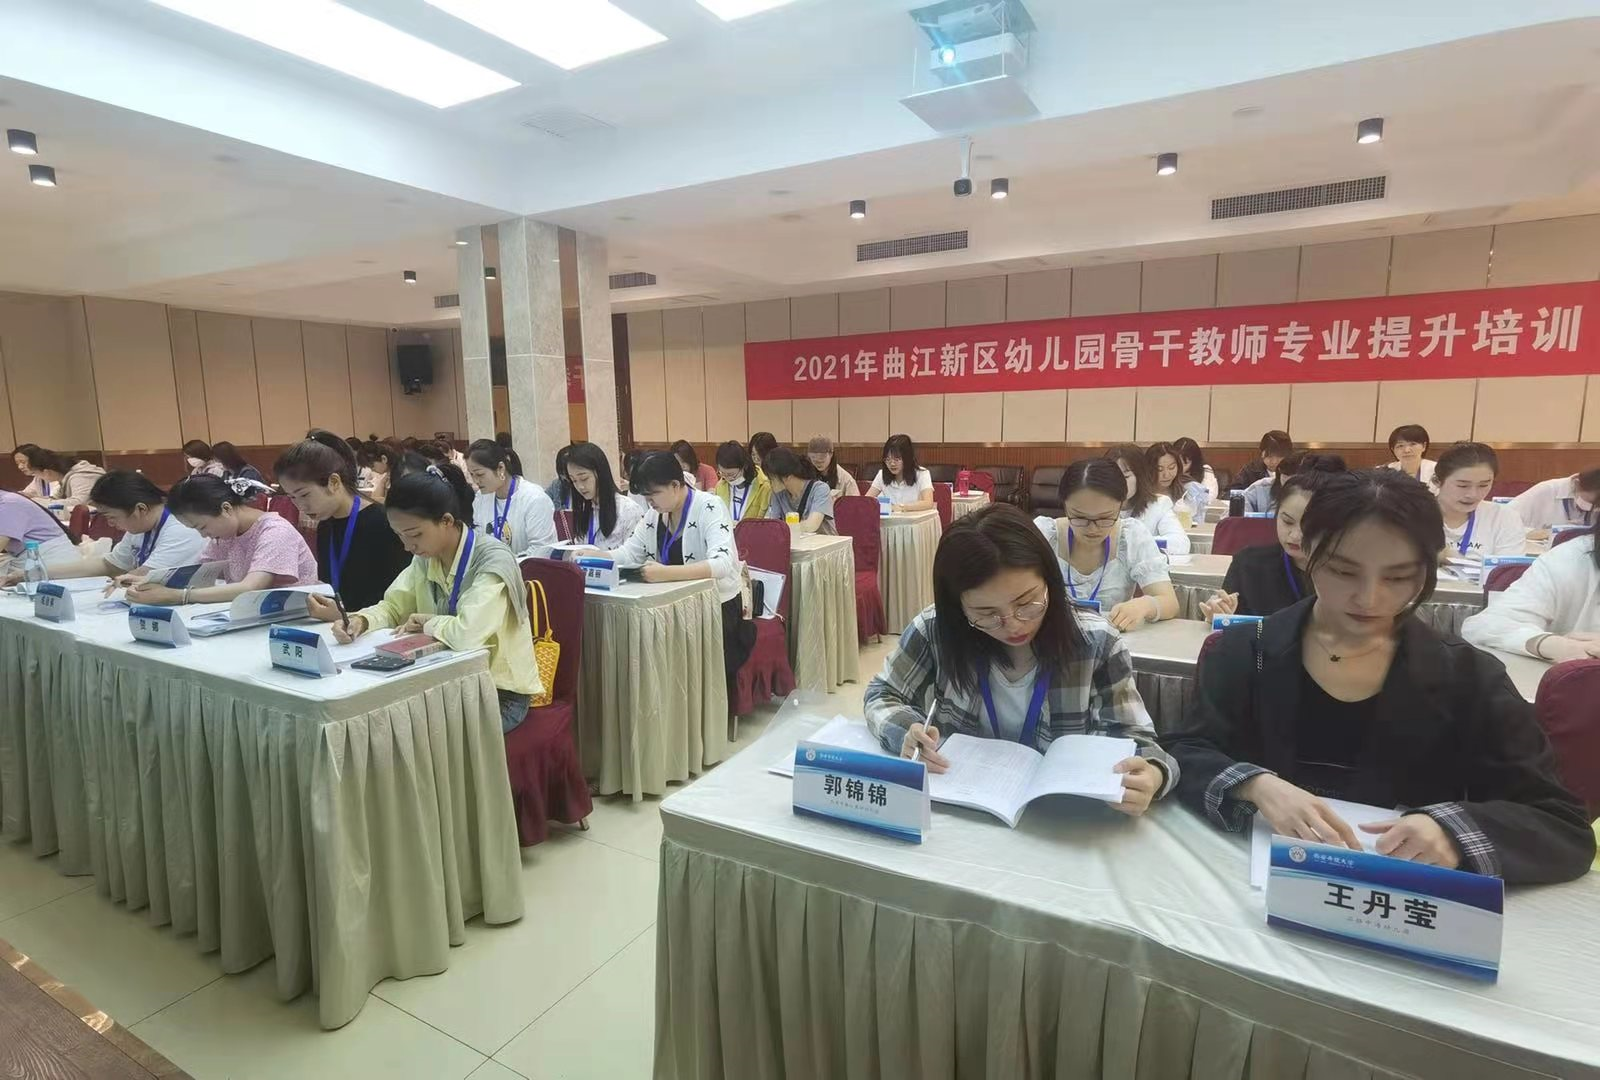 2021年曲江新区幼儿园教师专业提升系列培训拉开序幕